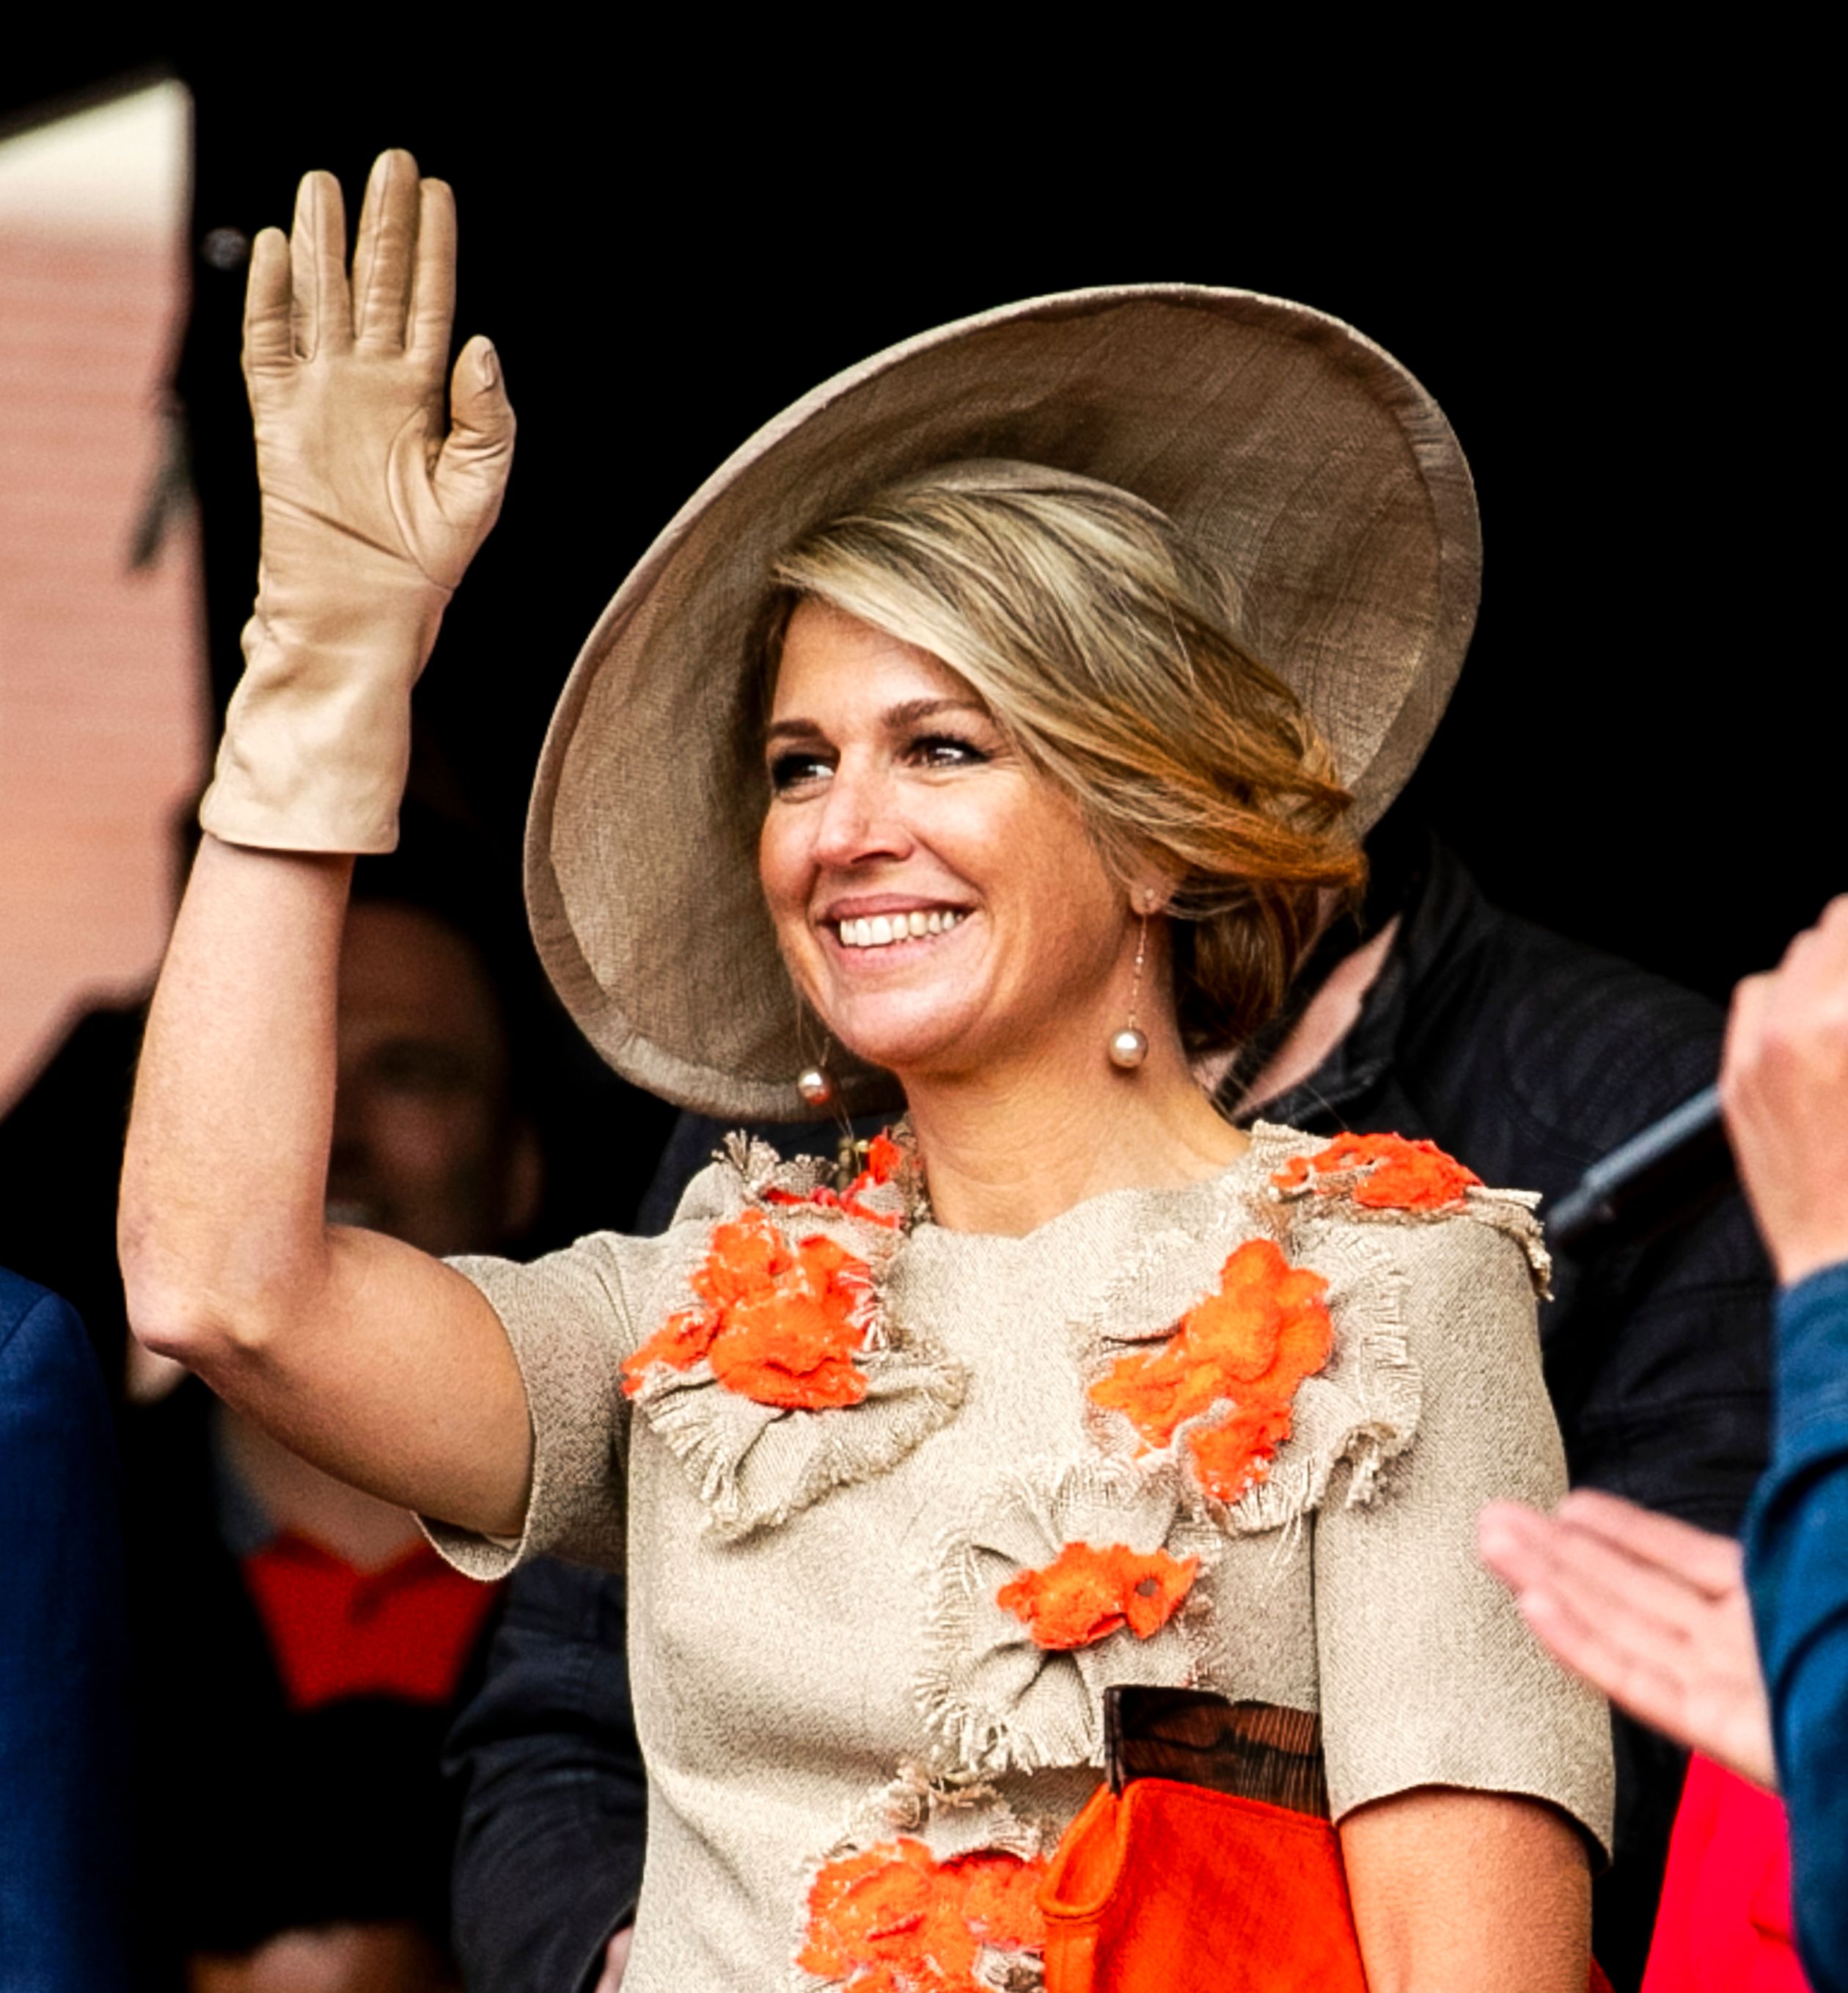 Máxima in dezelfde linnen outfit tijdens Koningsdag 2019 in Amersfoort.